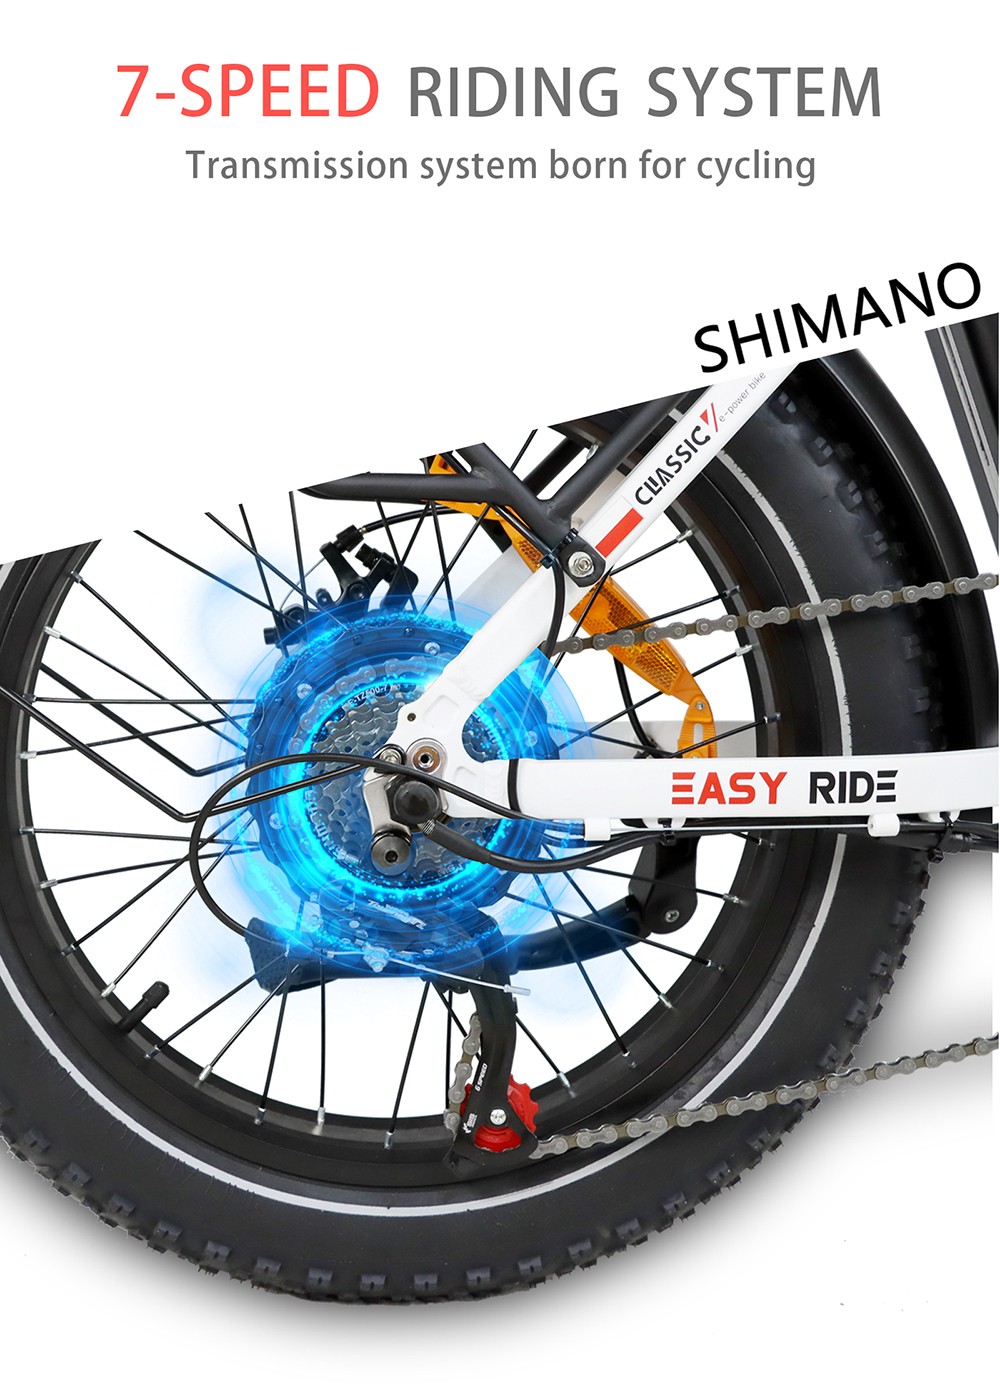 Vélo électrique BAOLUJIE DZ2030, pneu 20 * 4.0 pouces, moteur 500 W, batterie amovible 48 V 13 Ah, vitesse maximale 40 km/h, portée 35-45 km SHIMANO 7 vitesses - Blanc